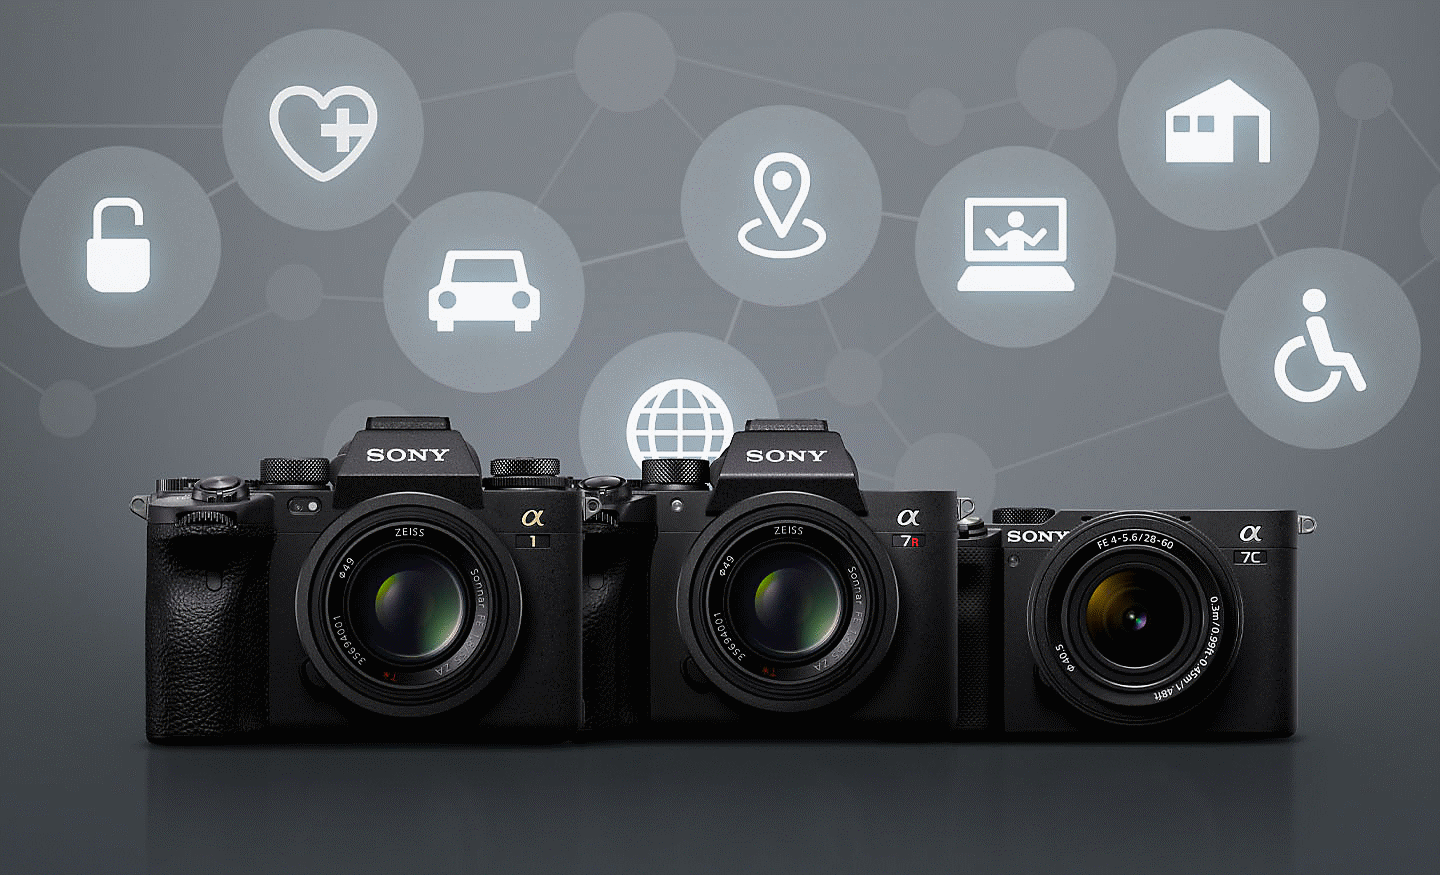 Fire Sony-kameraer mod en grå baggrund med forskellige hvide ikoner, der symboliserer fjernforbindelse